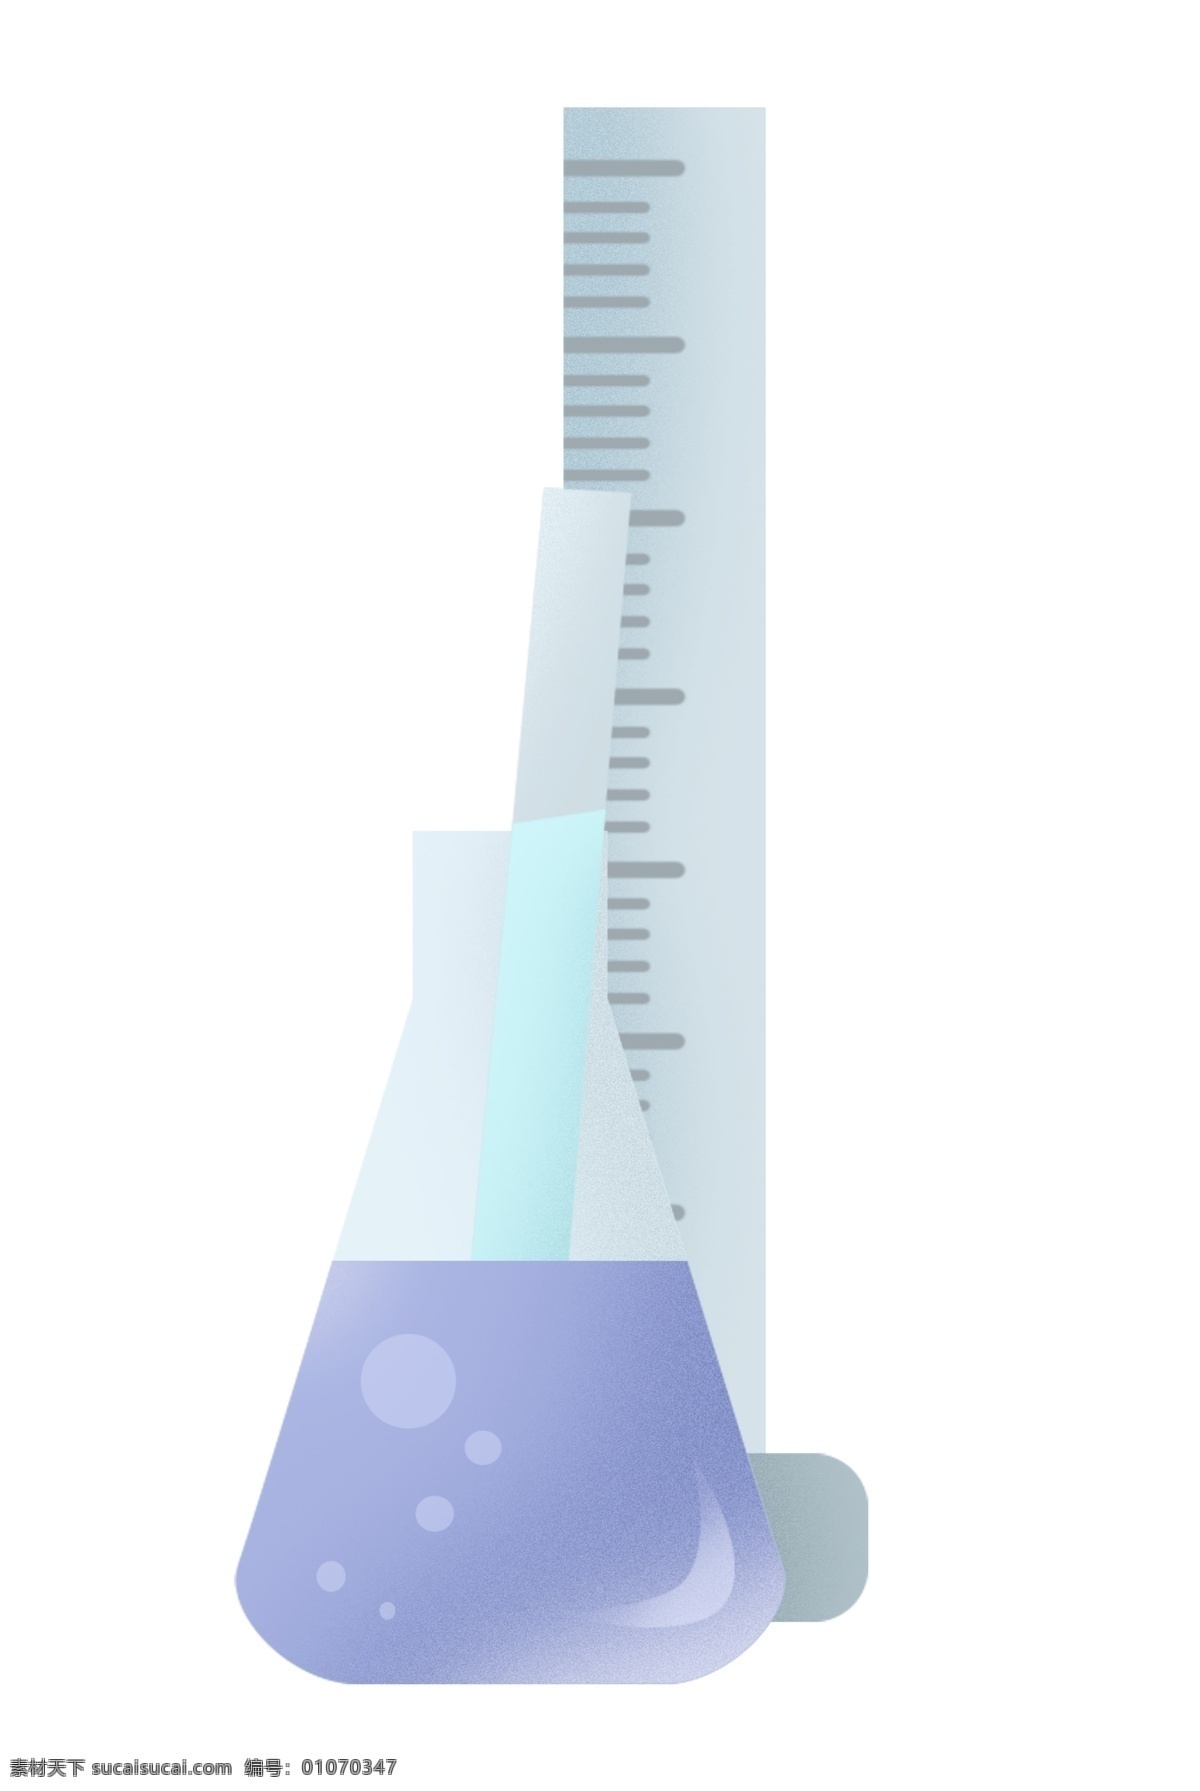 实验 器材 烧瓶 插画 烧瓶的插画 卡通插画 实验器材 化学实验 化学仪器 做实验插画 化学的烧瓶